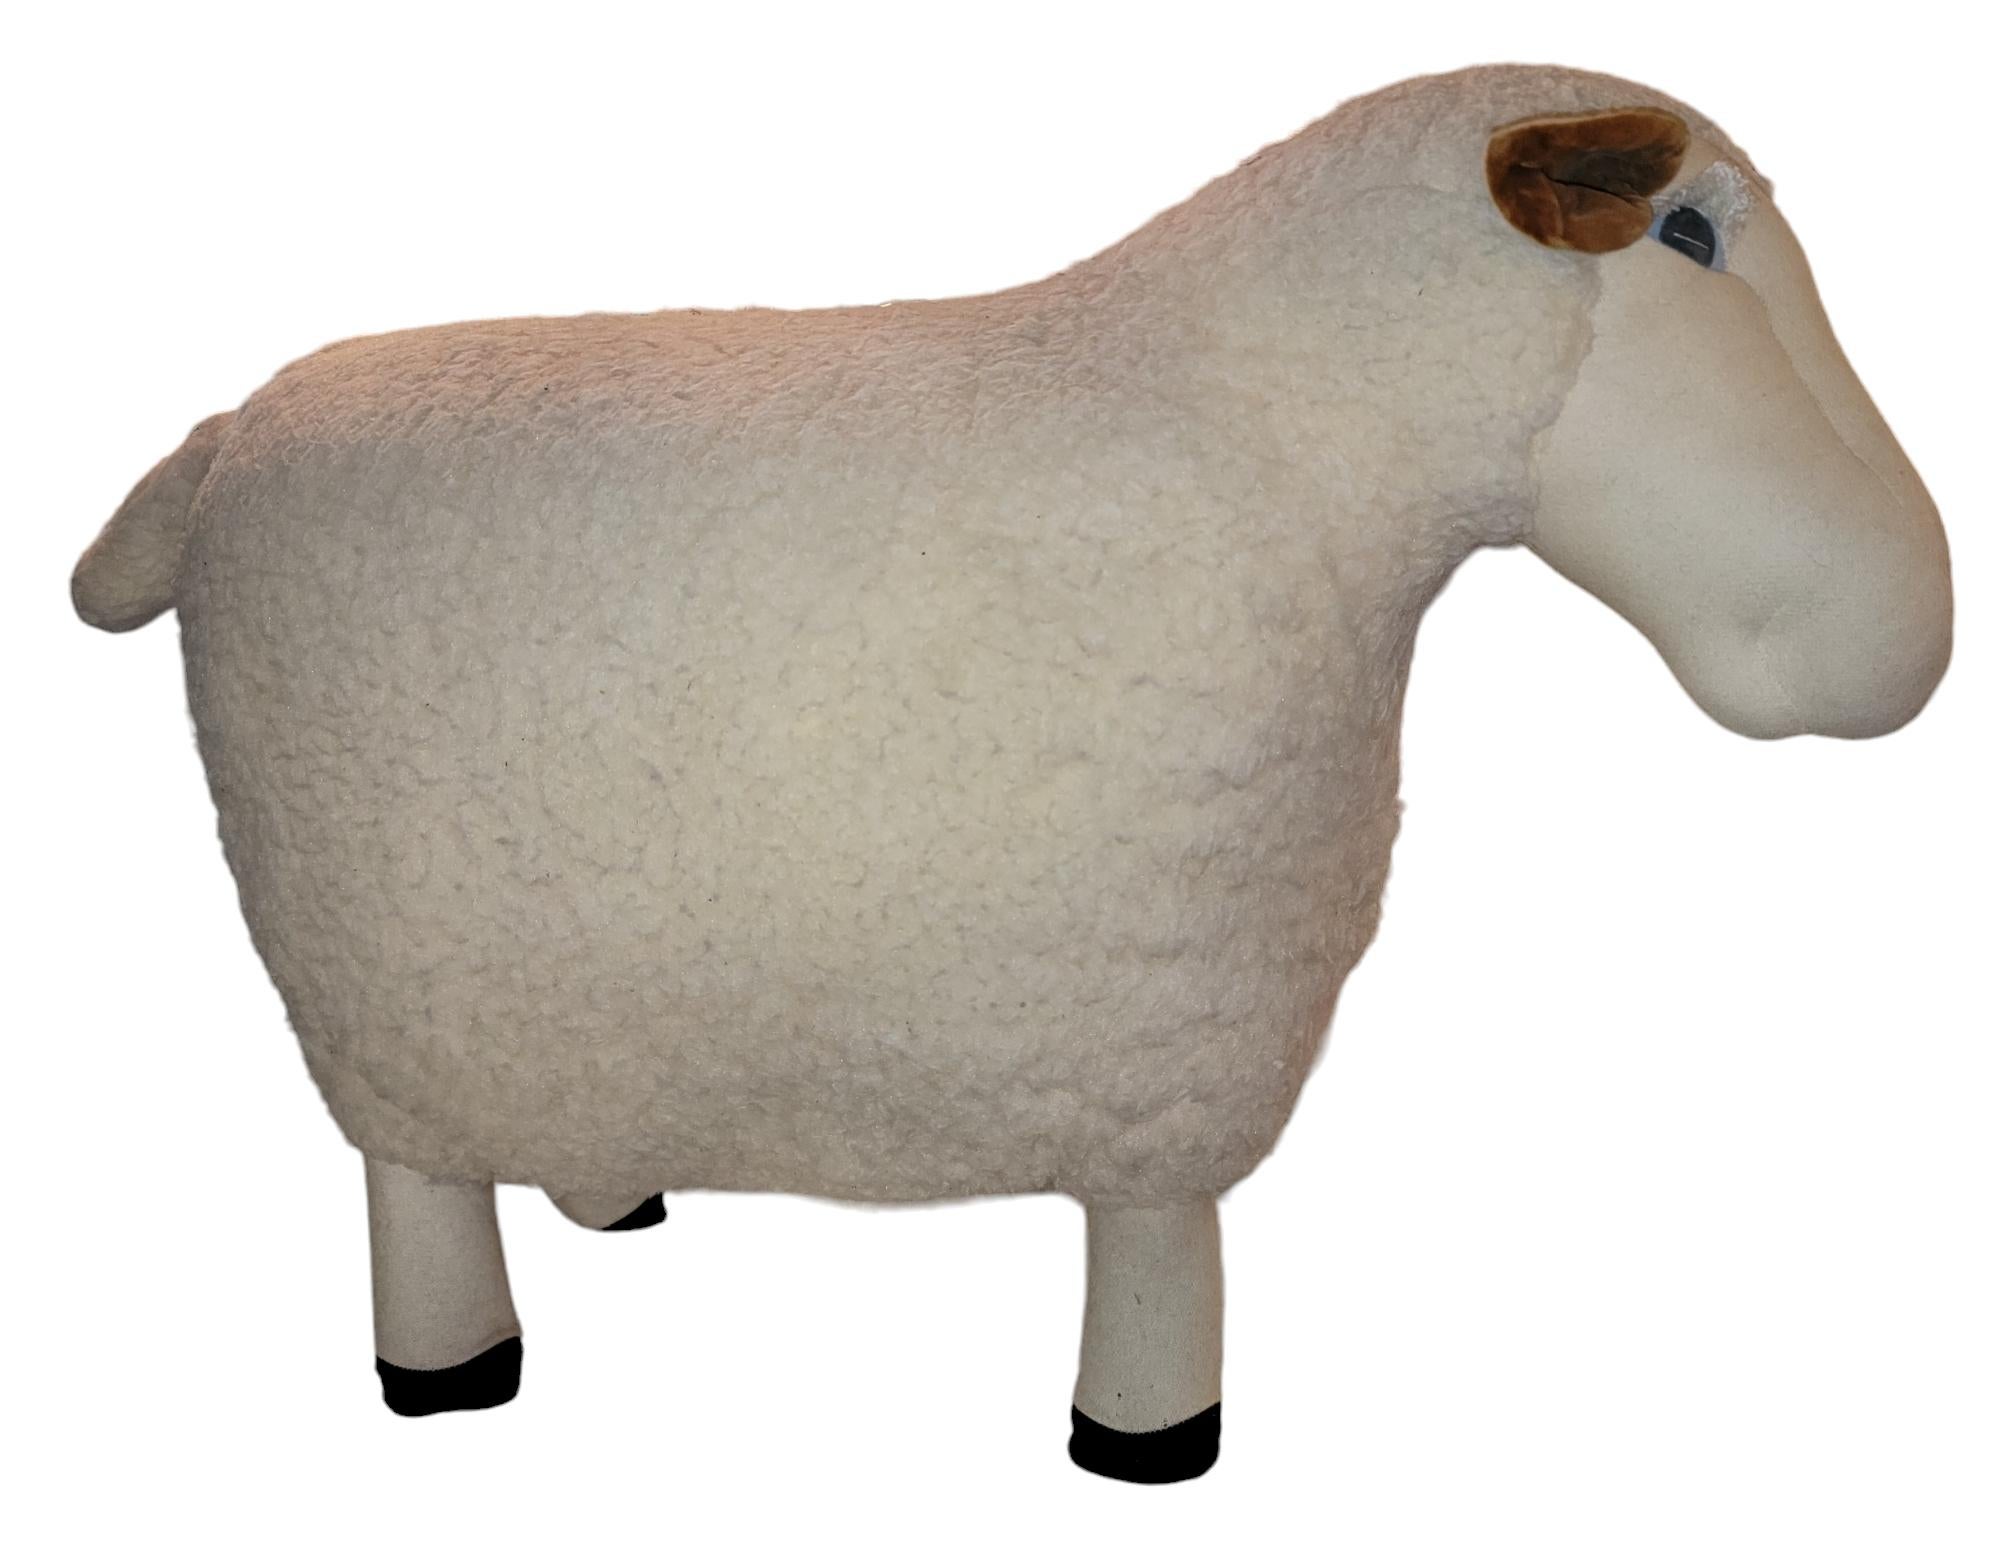 80er Jahre Dekorative Stehhhocker Schaf in Wolle mit Stoffbeinen. Die Wolle geht durch den ganzen Körper bis zum Boden des Schafes, wo die Beine mit der Wolle vernäht werden. Maße ca. - 13d  x24 h x 33w

Dieses Stück ist sehr robust. Wir haben die